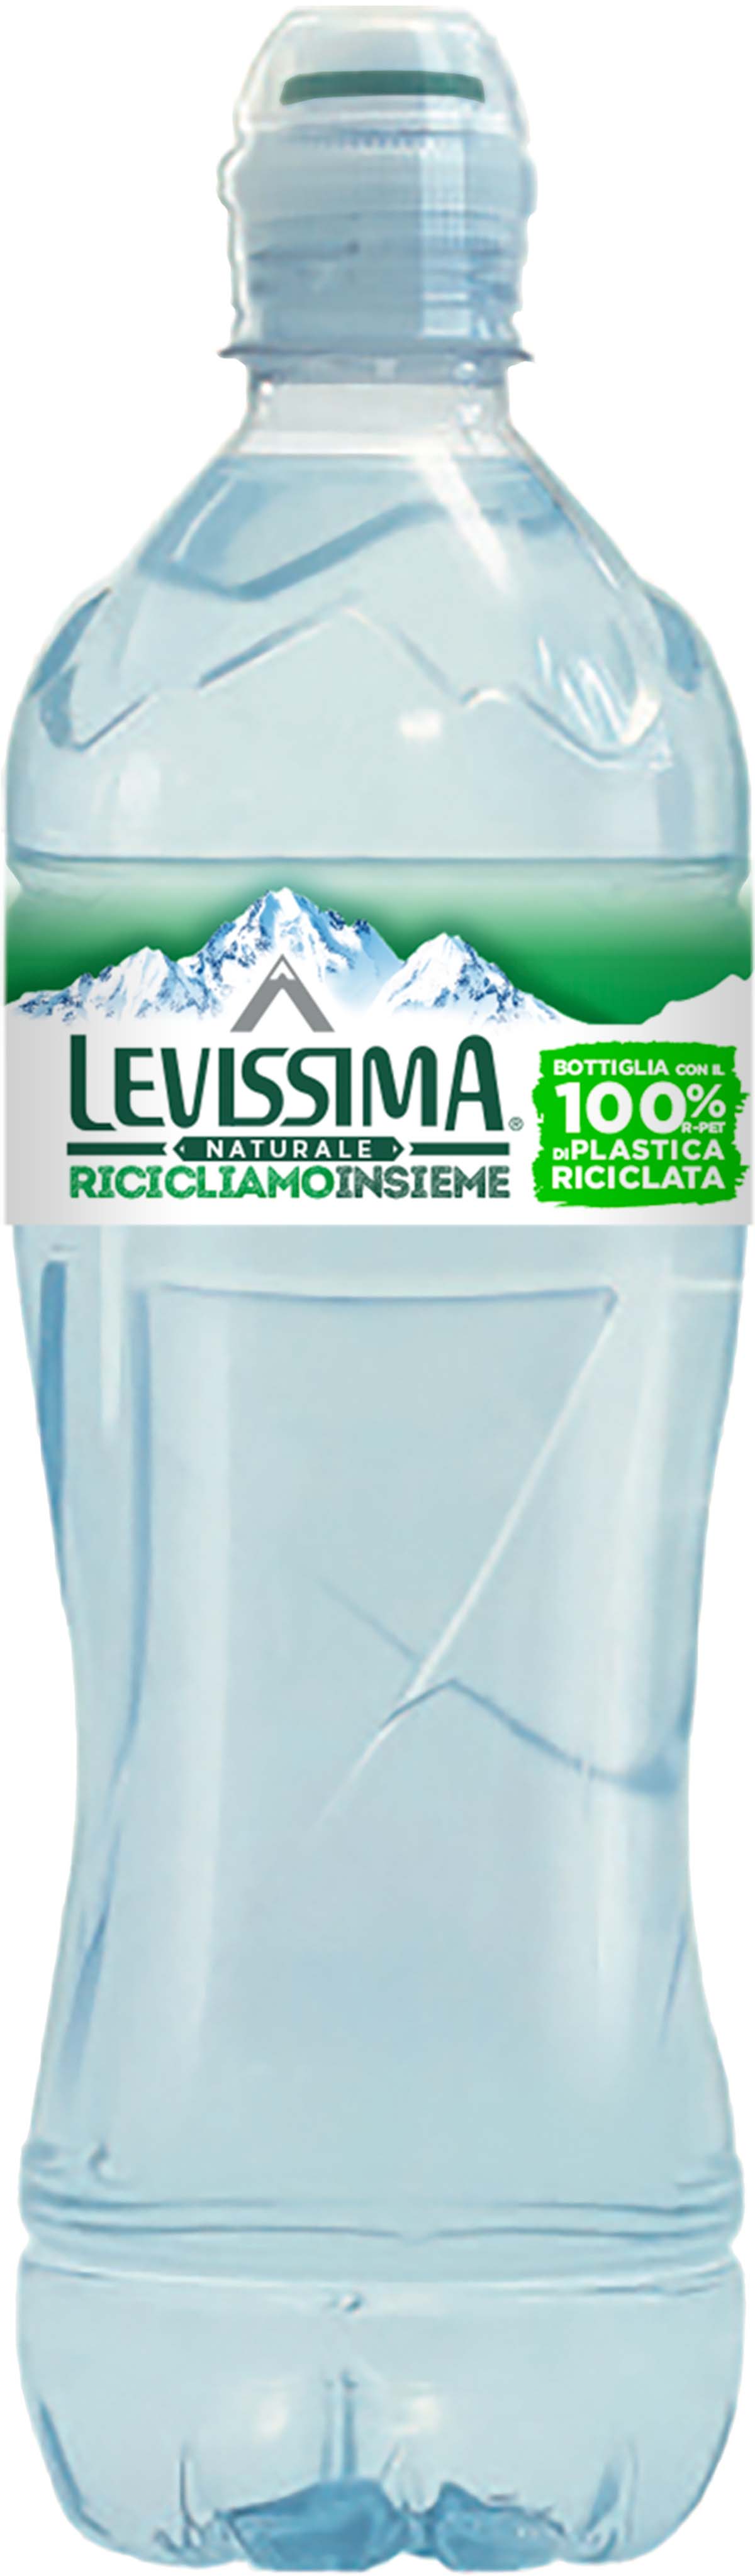 Levissima Acqua Minerale Naturale 75 cl 100% RPET - Bottiglia